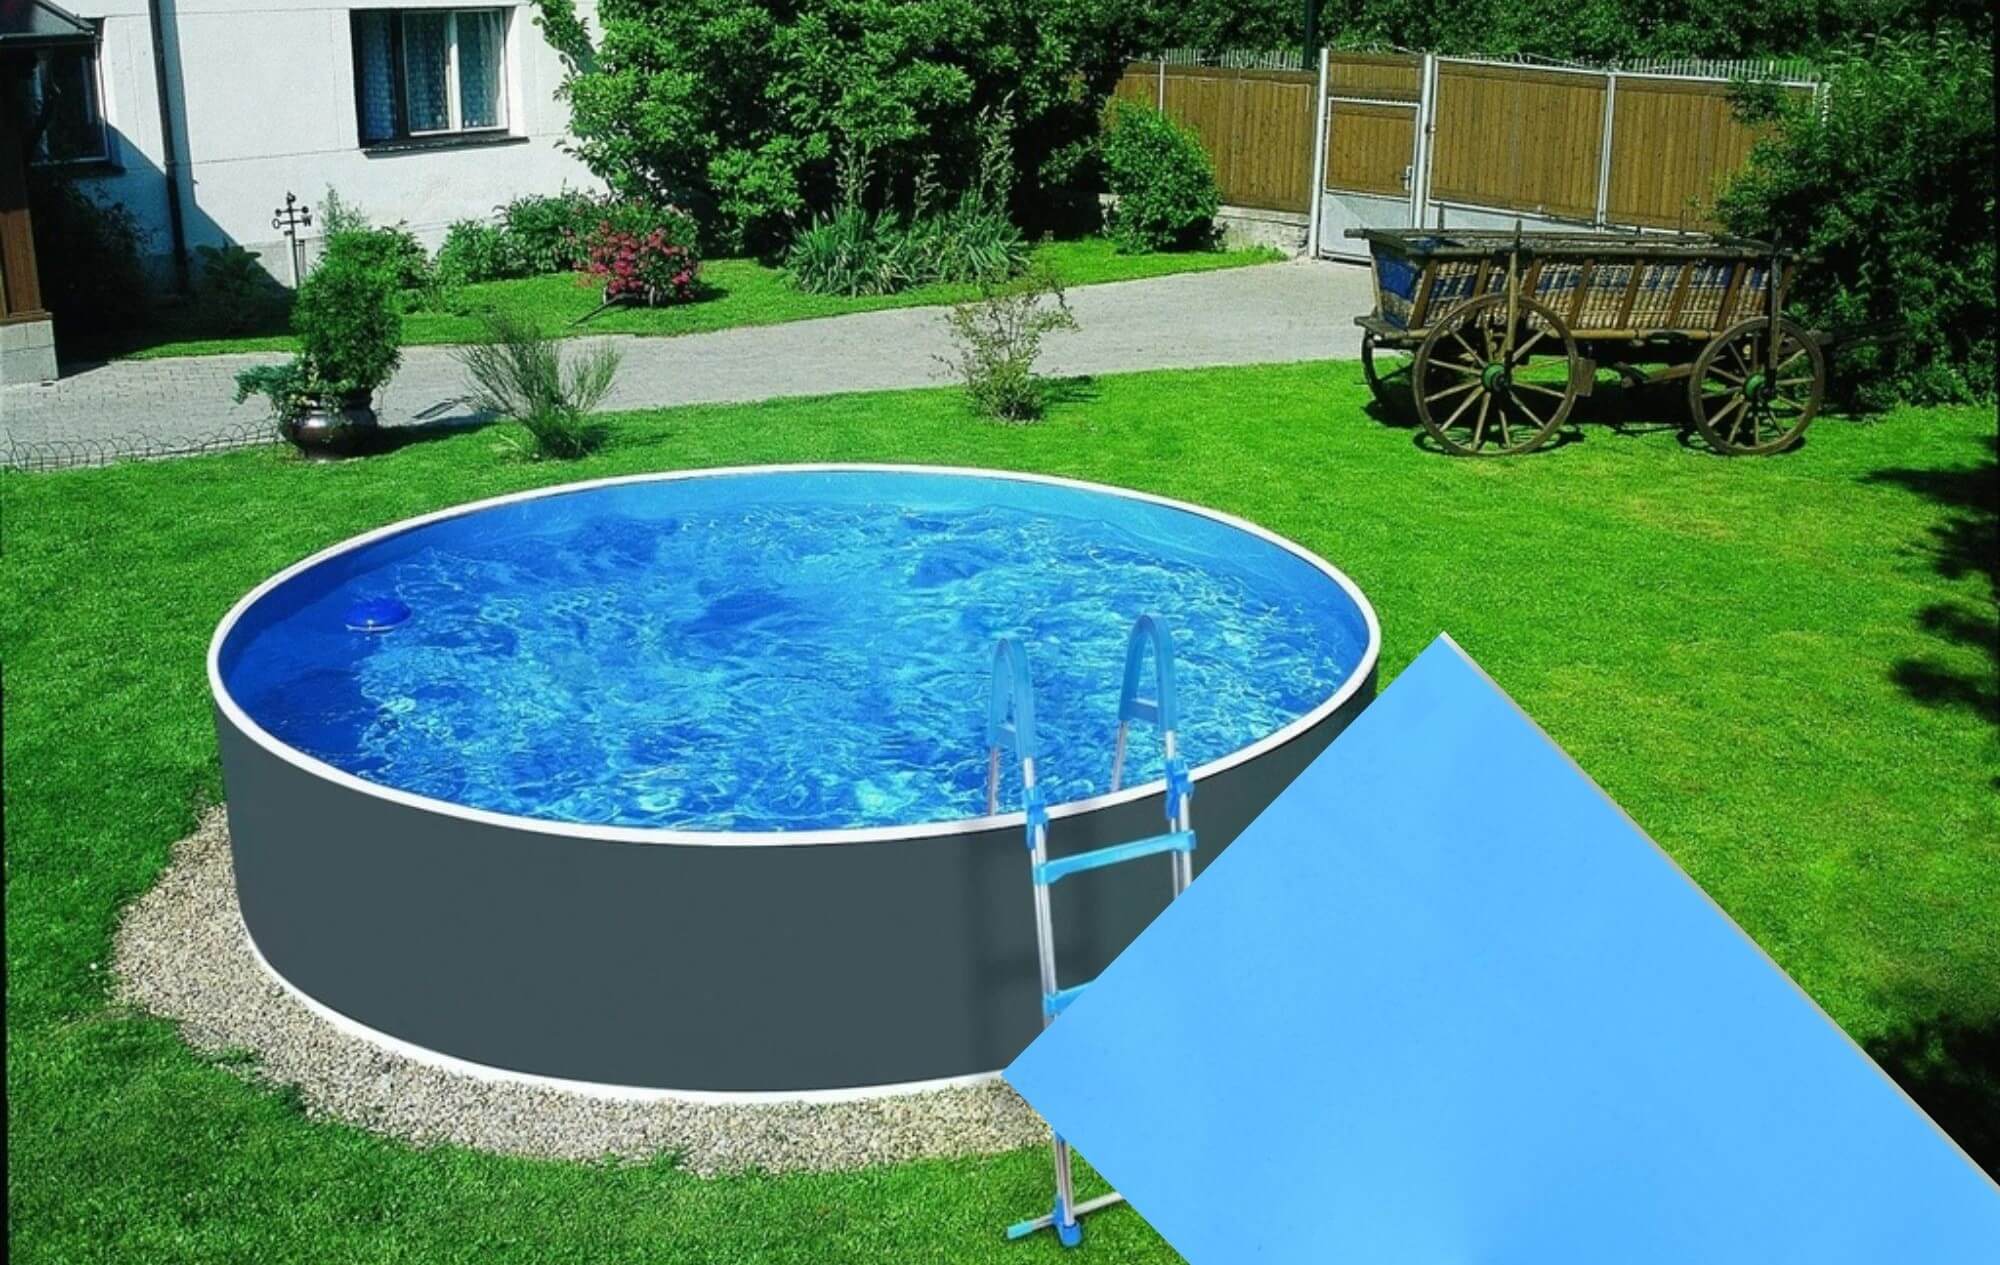 Planet Pool CF Náhradní bazénová fólie Blue pro bazén průměr 3,0 m x 0,92 m